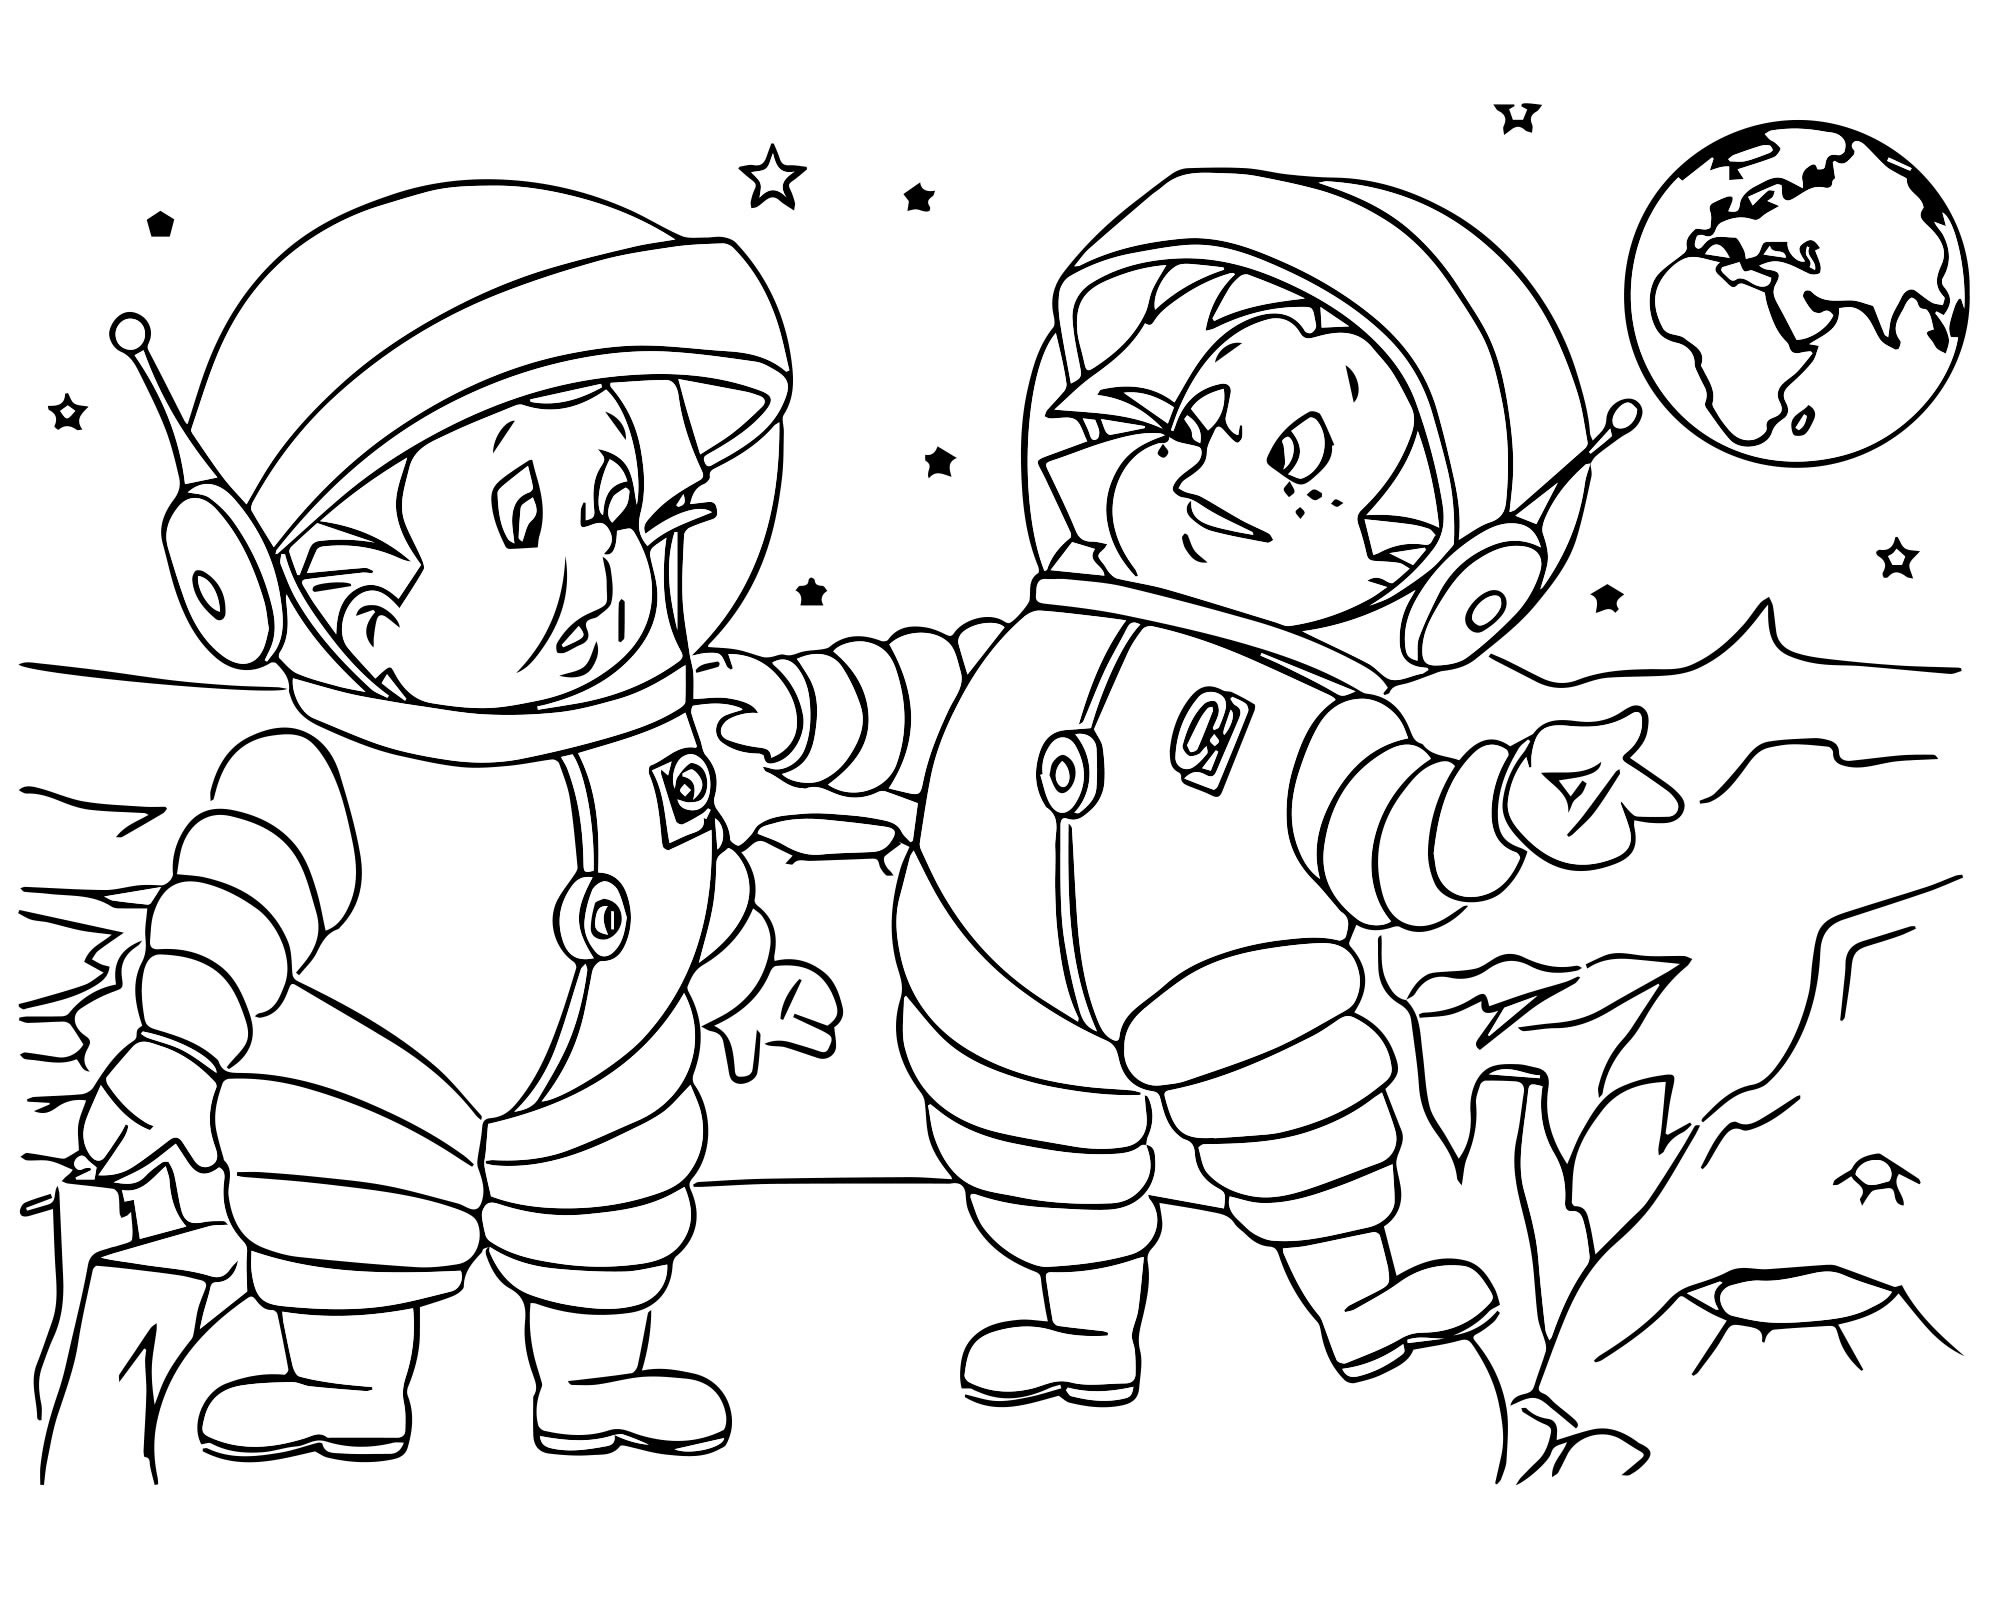 Раскраски 12 апреля день космонавтики для детей. Незнайка на Луне раскраска для детей. Раскраска. В космосе. Космос раскраска для детей. Раскраска день космонавтики для детей.